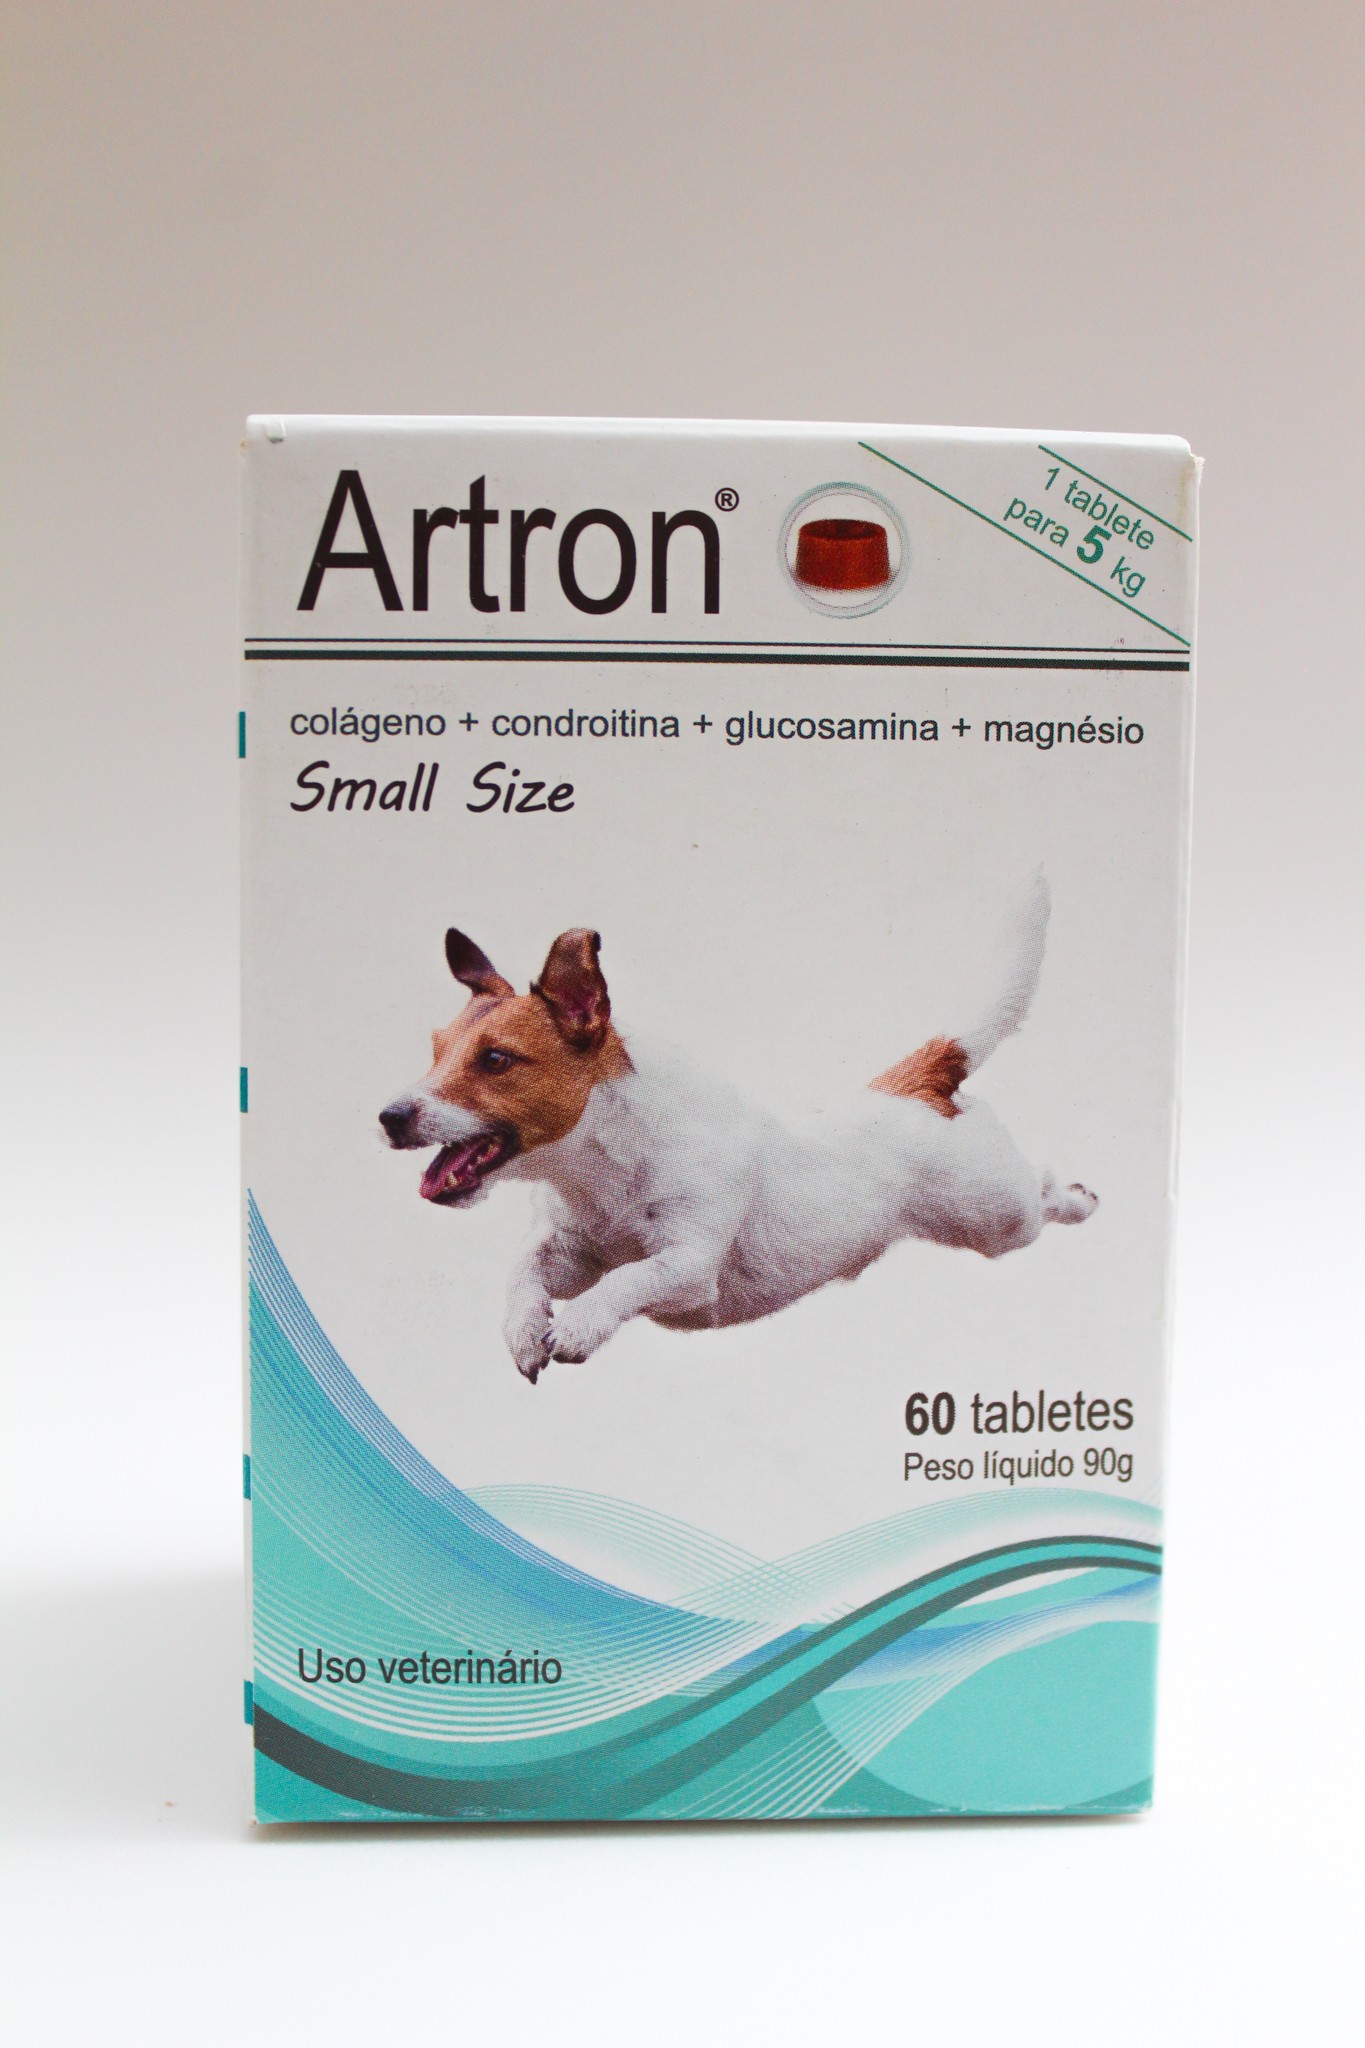 Artron Articulações small size